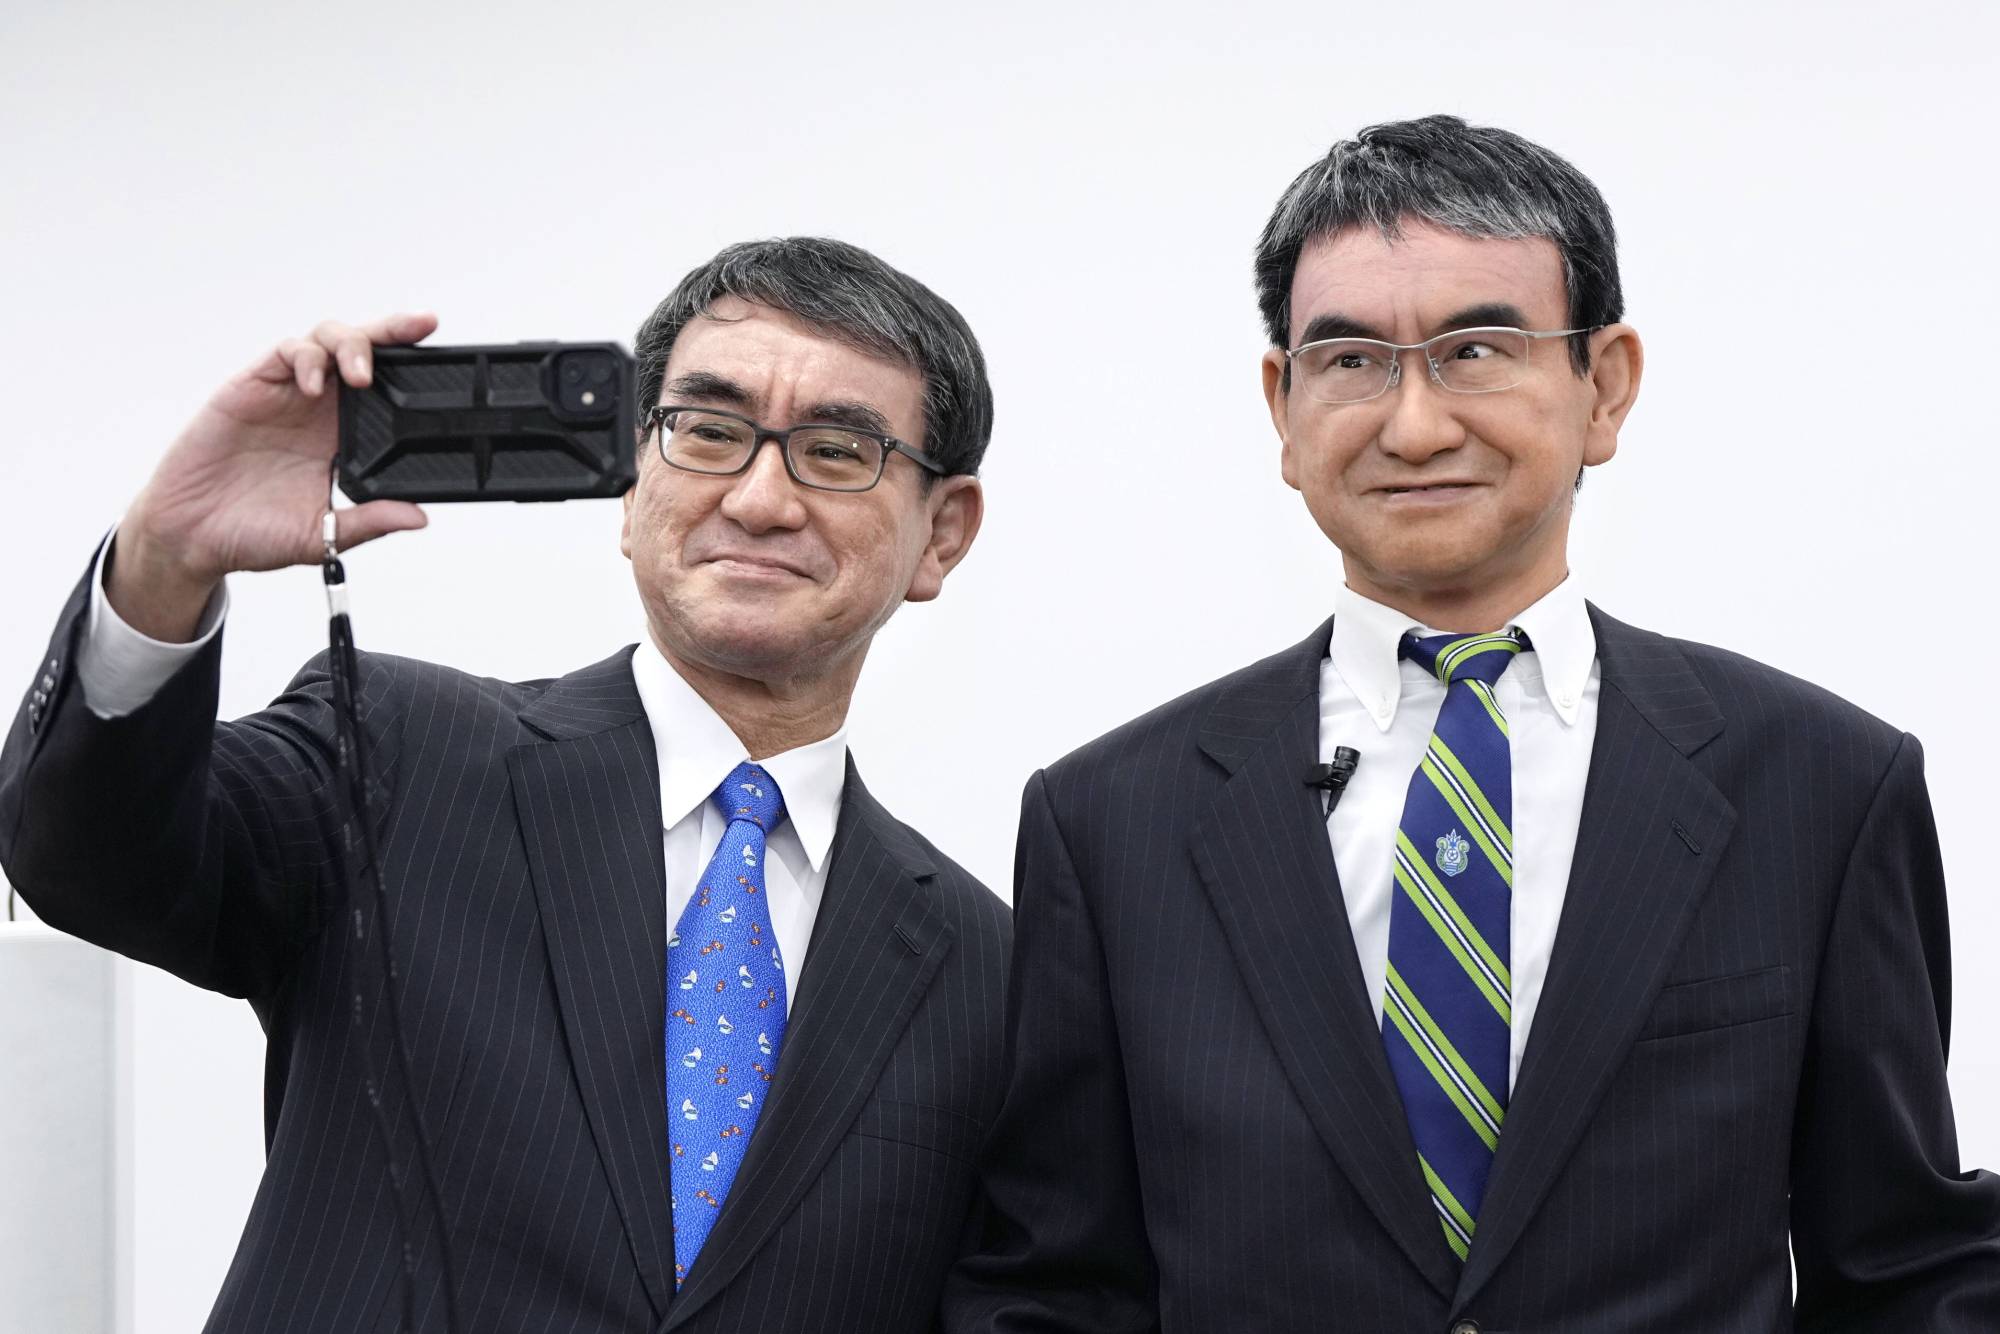 Japonia stworzyła cyfrowego klona ministra - inteligentniejszego i bardziej rozwiniętego niż prawdziwa osoba